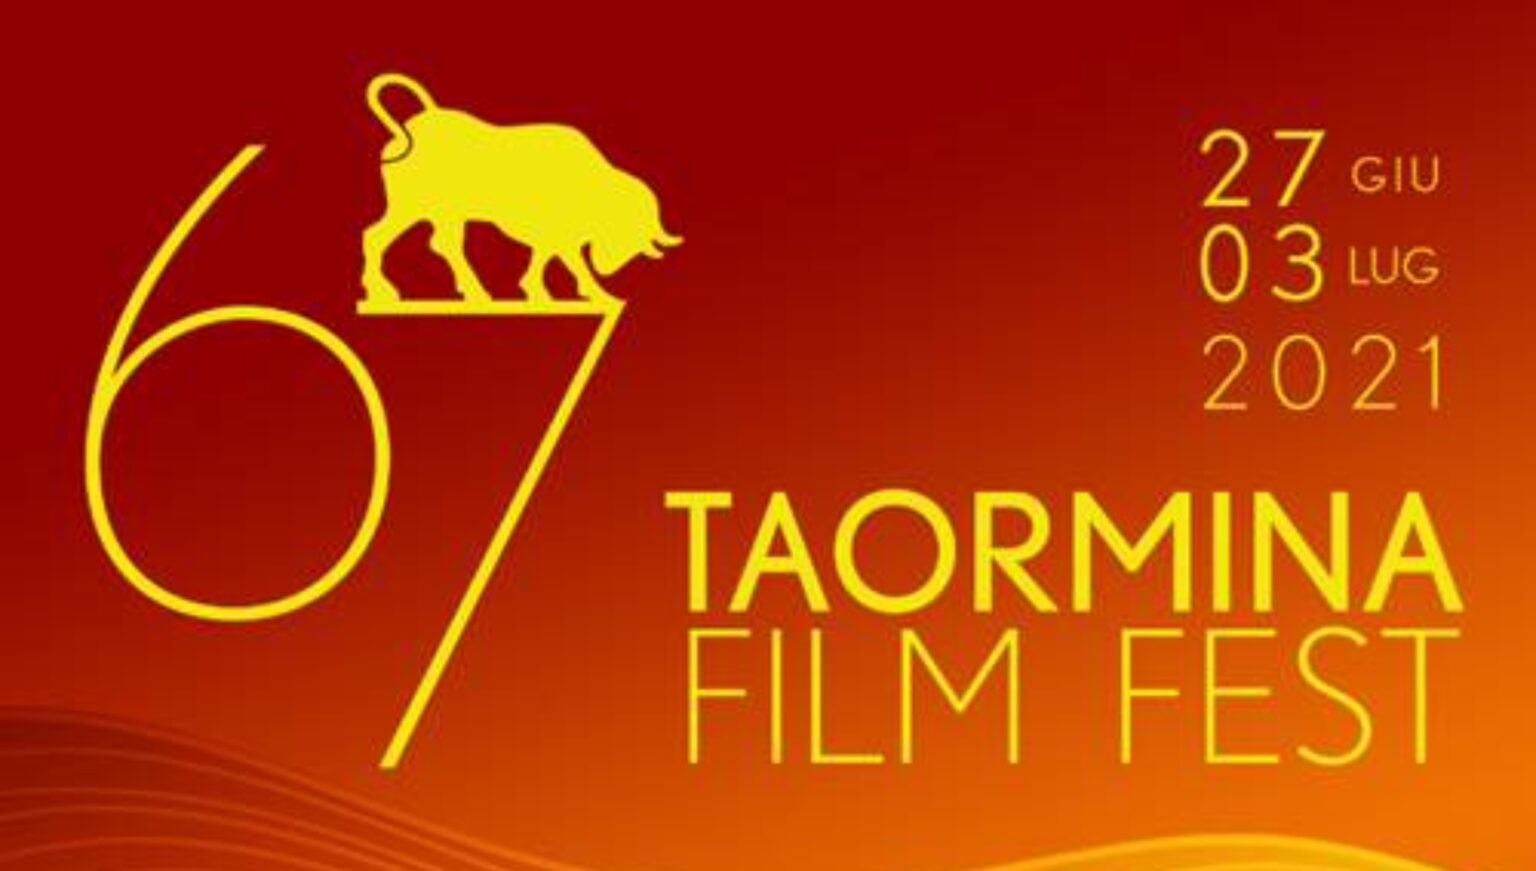 Taormina Film Fest il manifesto ufficiale della 67ma edizione Ciak